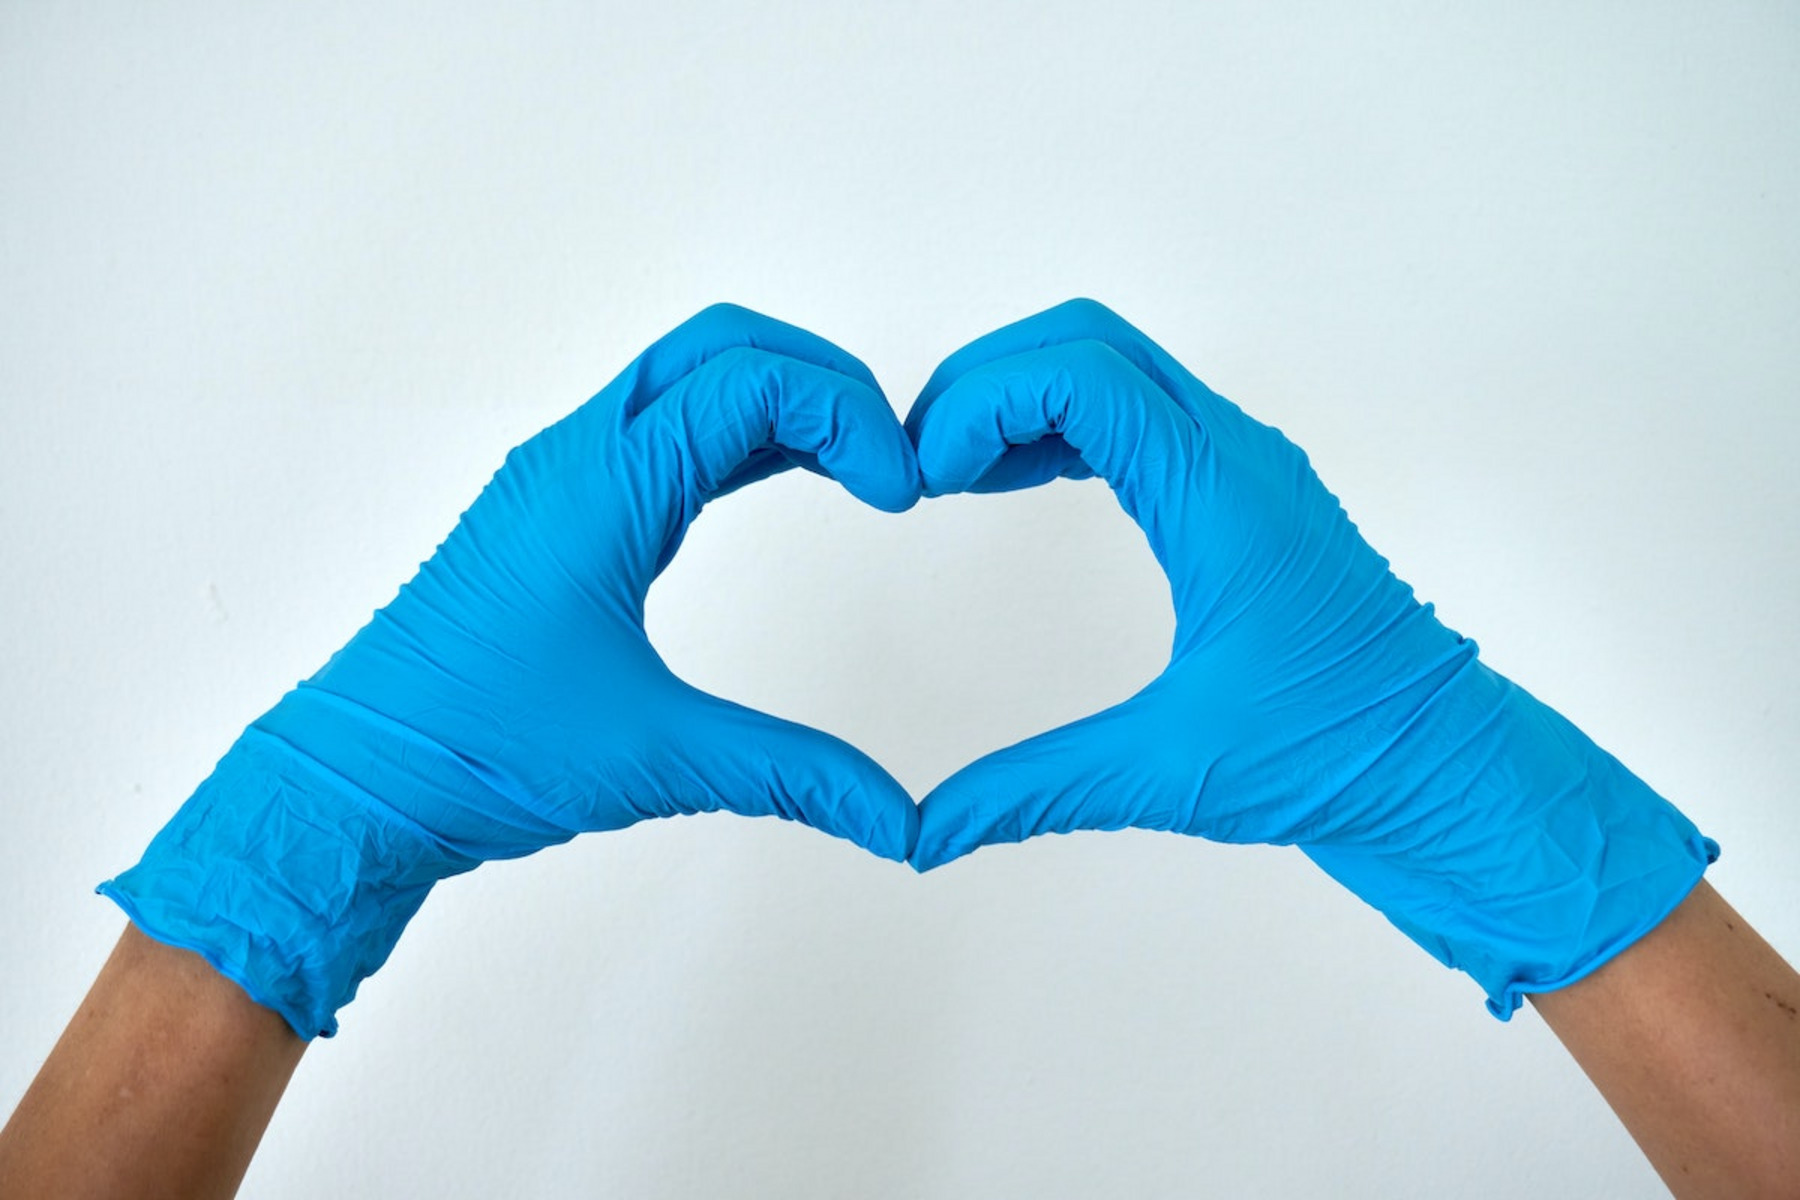 Zwei Hände mit blauen Plastikhandschuhe formen ein Herz mit den Fingern.